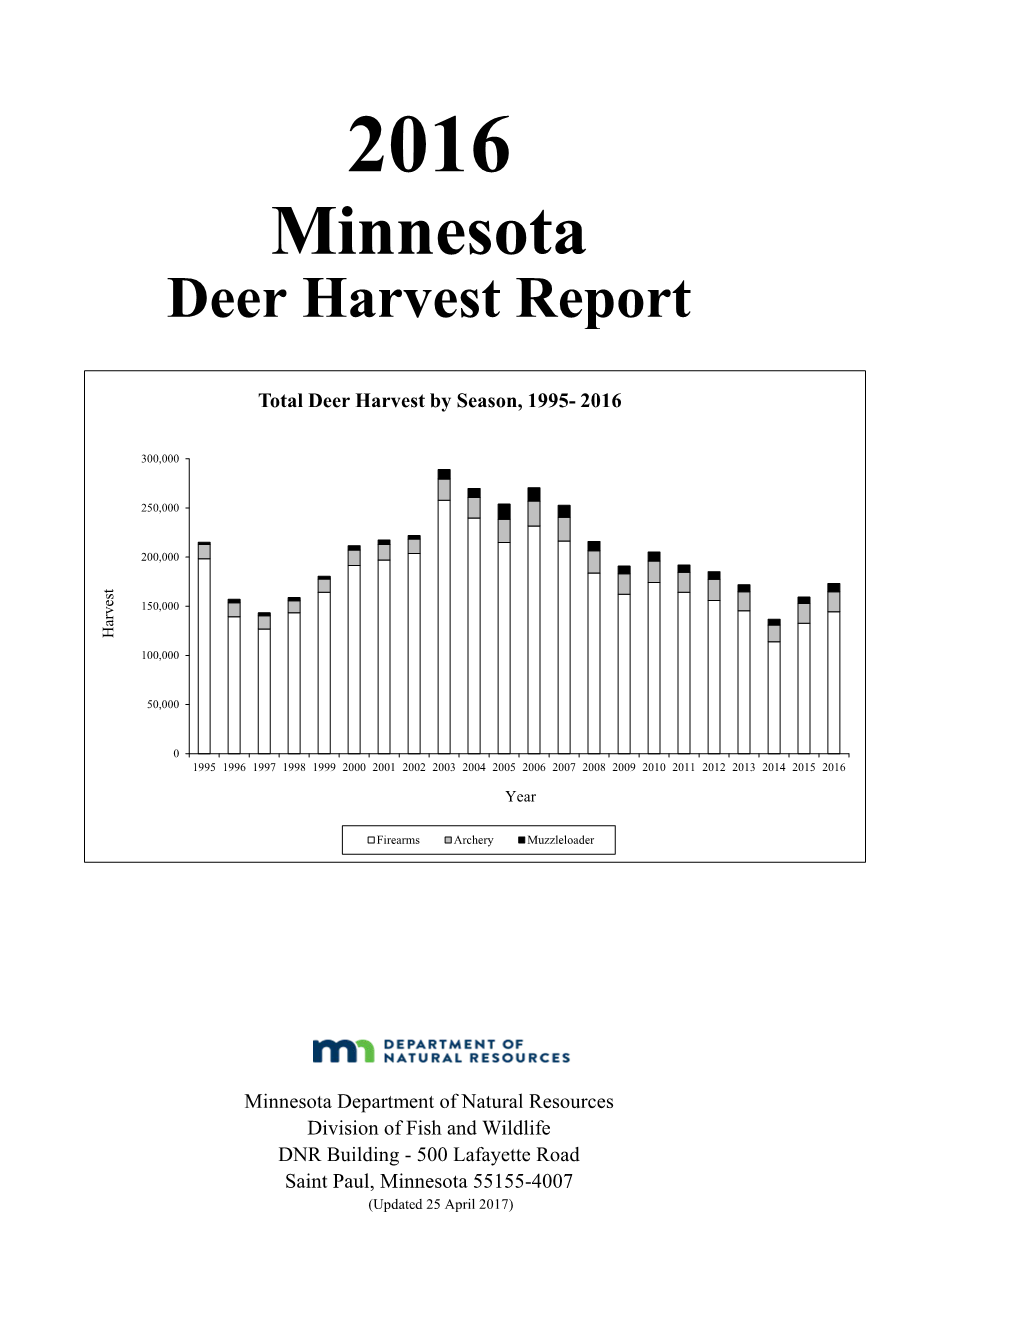 2016 Deer Harvest Report